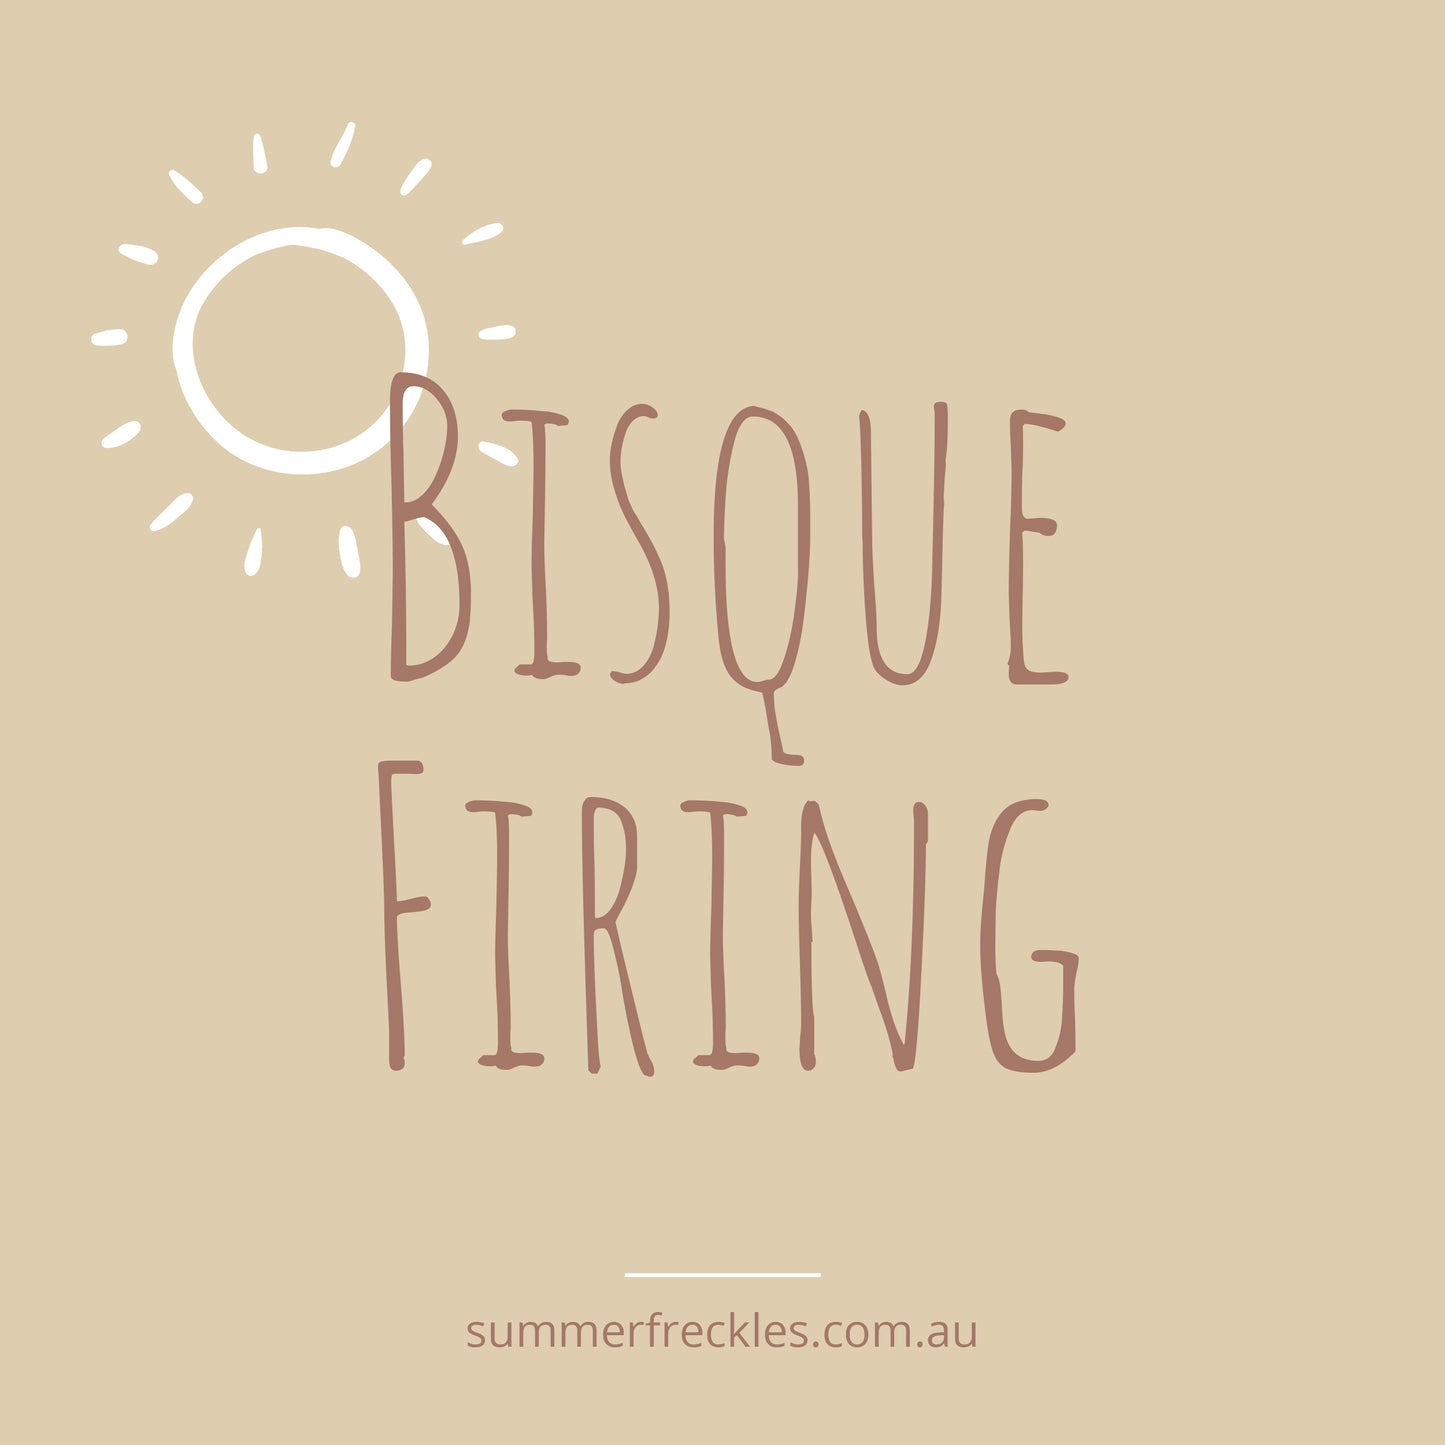 Firing - Bisque